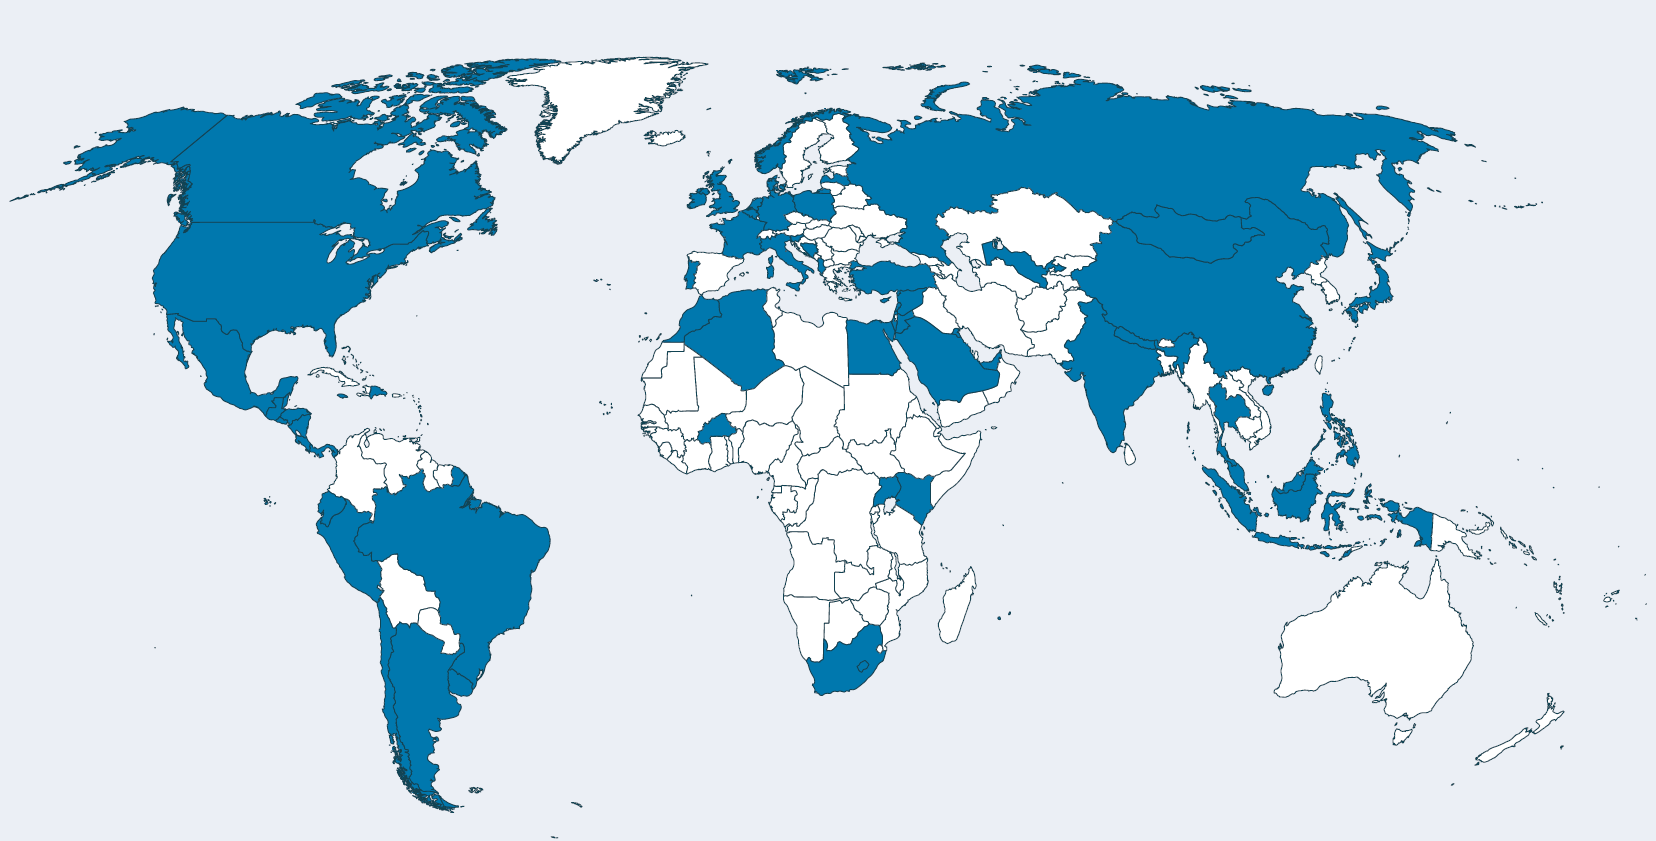 Über 60 Länder haben Ausschreibungen für erneuerbare Energien eingeführt.